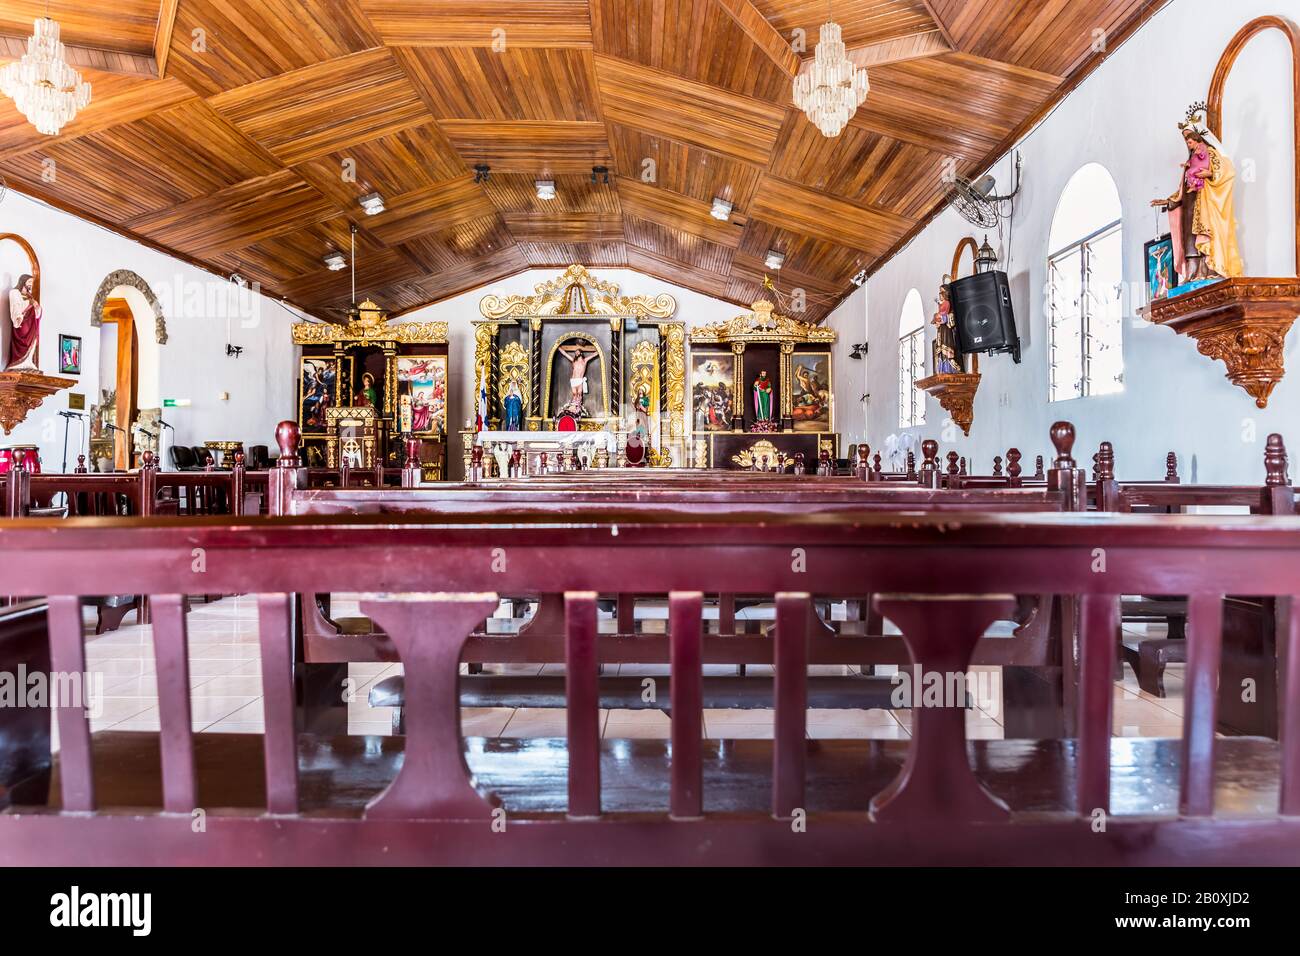 Pedasi, Panama - 19 febbraio 2020: Interno della chiesa cattolica chiamata Iglesia de Santa Catalina a Pedasi, Panama. Foto Stock